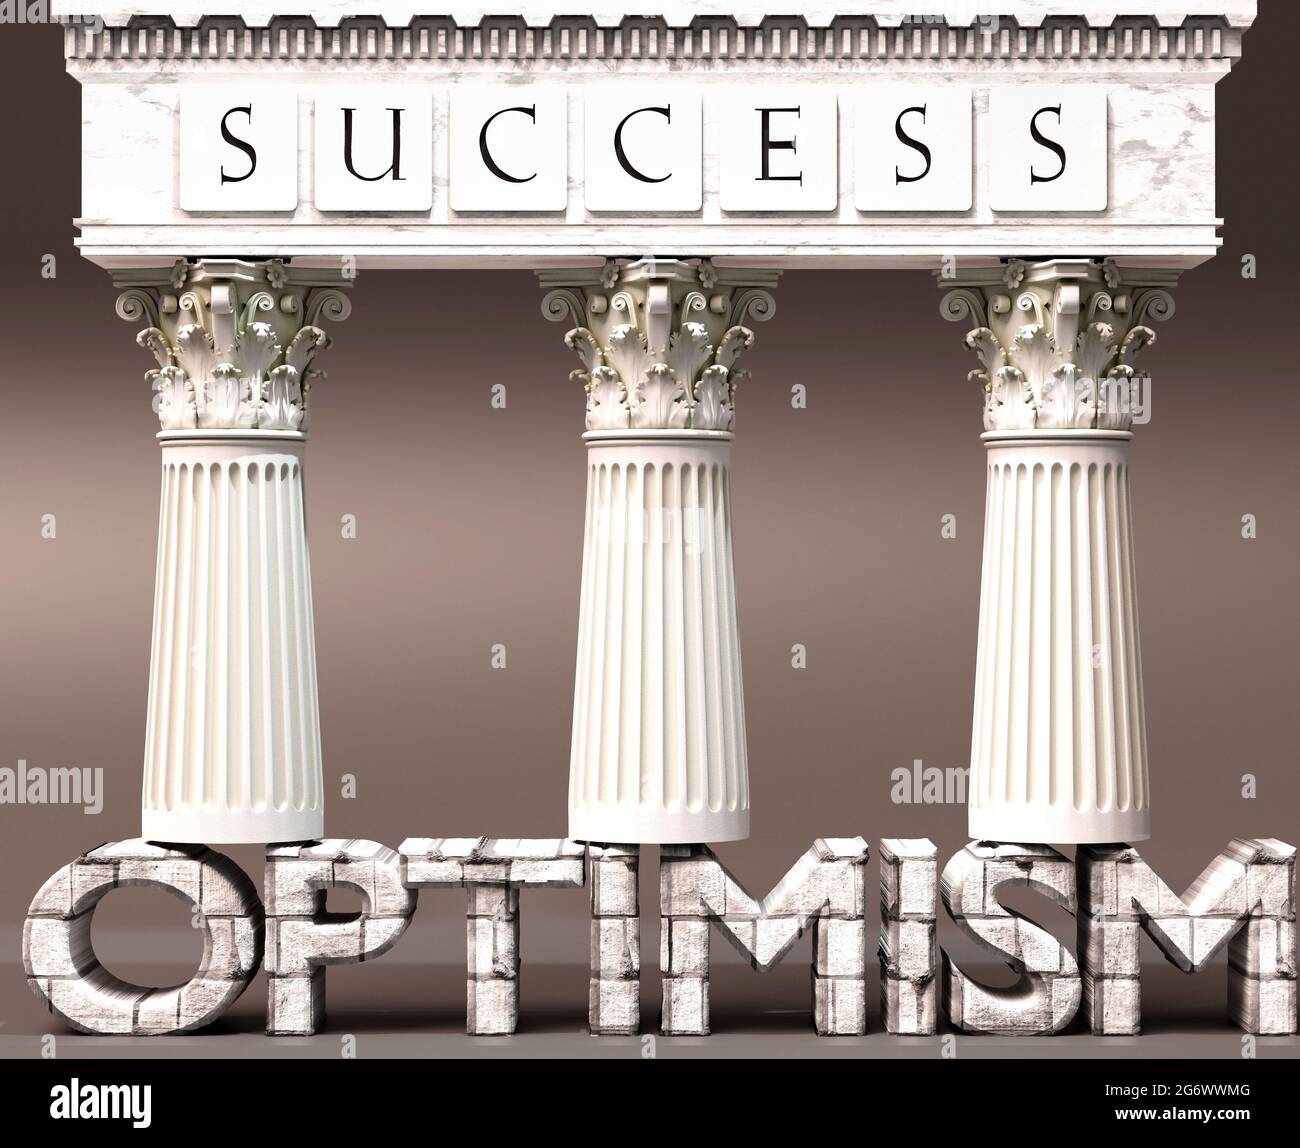 L'optimisme comme fondement du succès - symbolisé par les piliers du succès soutenus par l'optimisme pour montrer qu'il est essentiel pour atteindre des objectifs et l'achie Banque D'Images